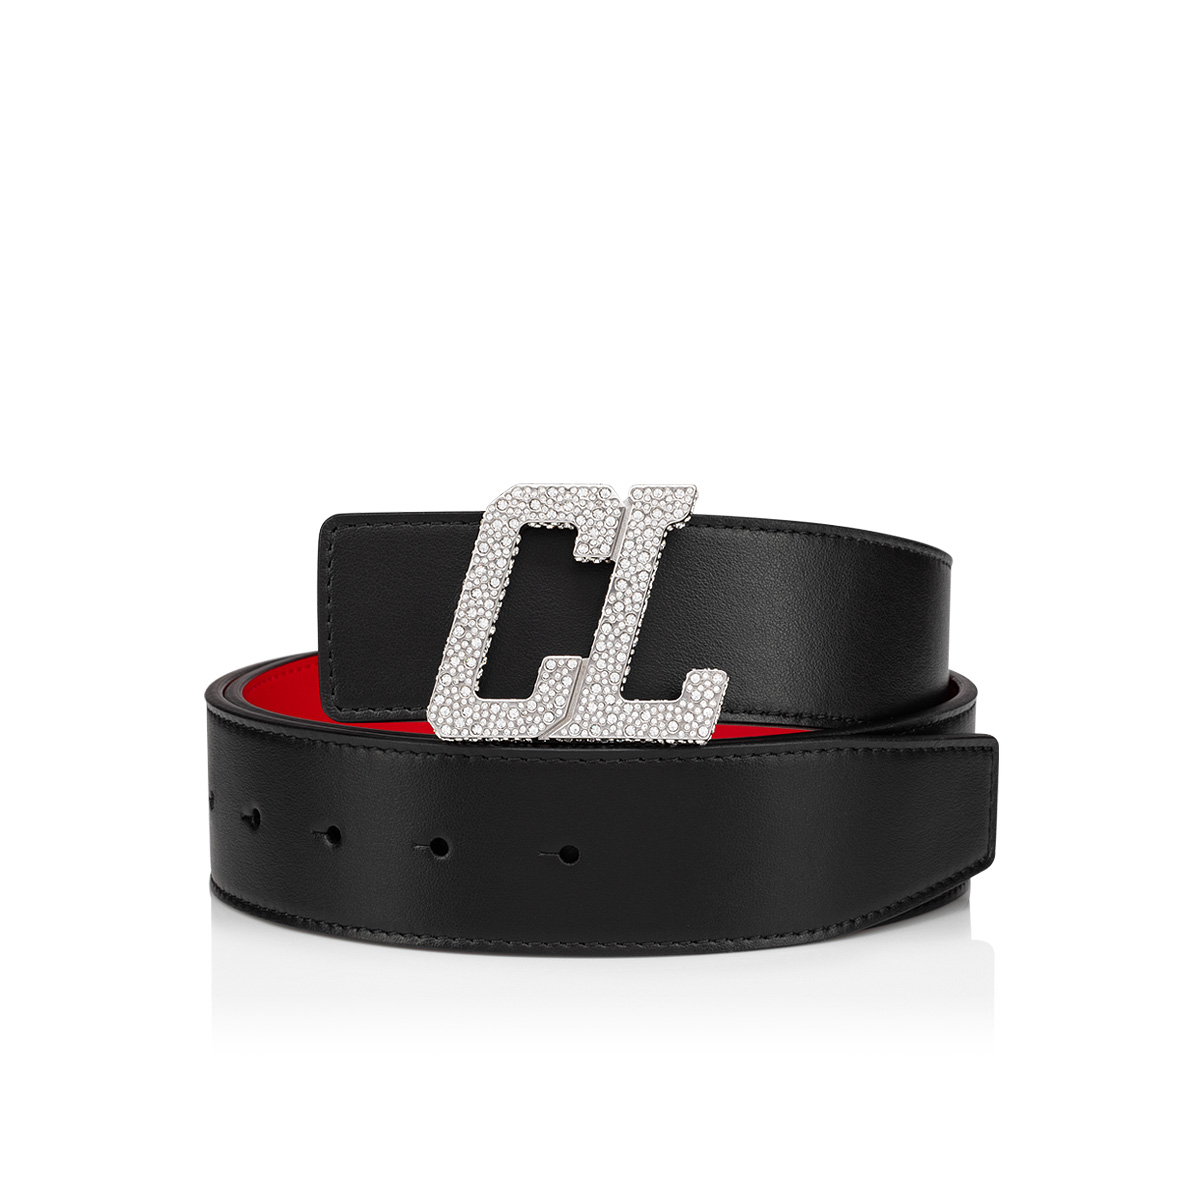 Happy Rui CL Logo belt buckle - Belt buckle - Christian Louboutin